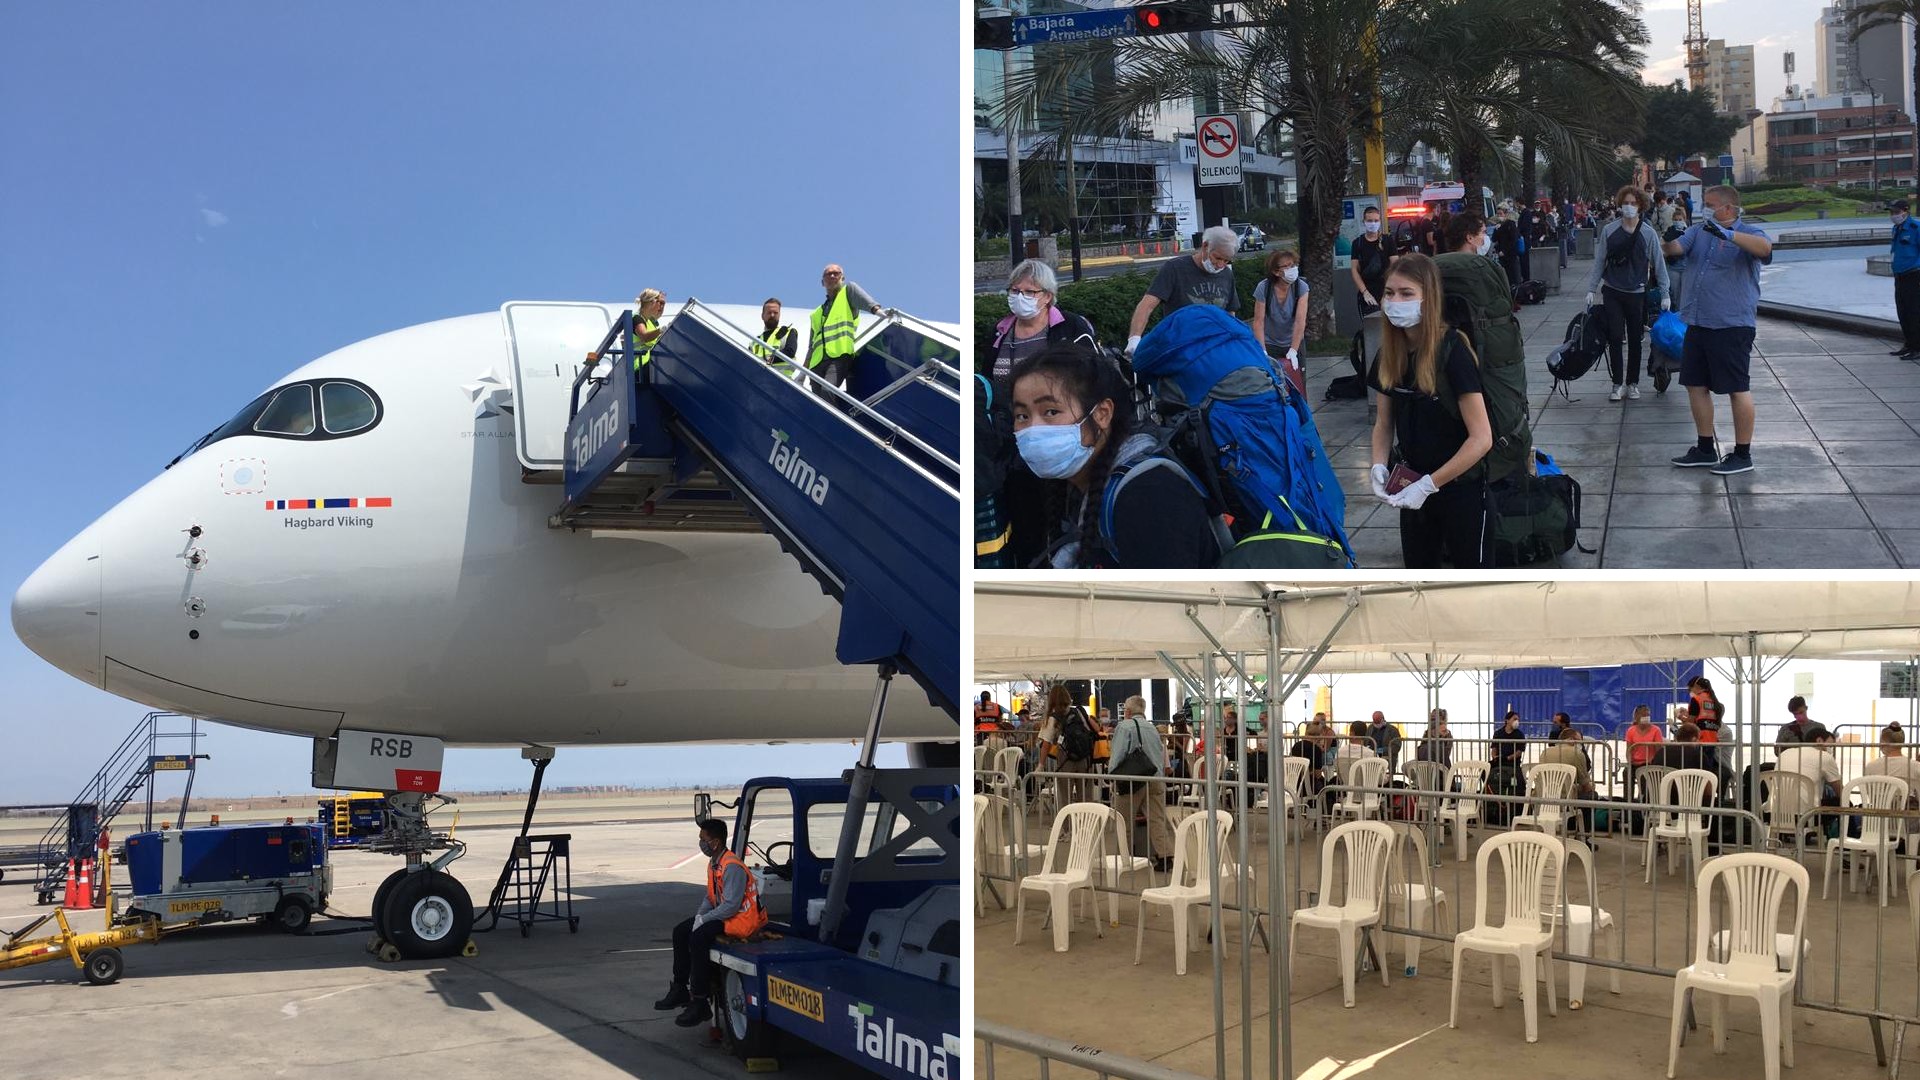 Kuvamosaiikki: matkailijat palaavat Perusta kotimaihinsa EU-maiden järjestämällä kotiutuslennolla. Jonotusta kadulla ja teltassa, lentokone valmiina vastaanottamaan matkustajia.